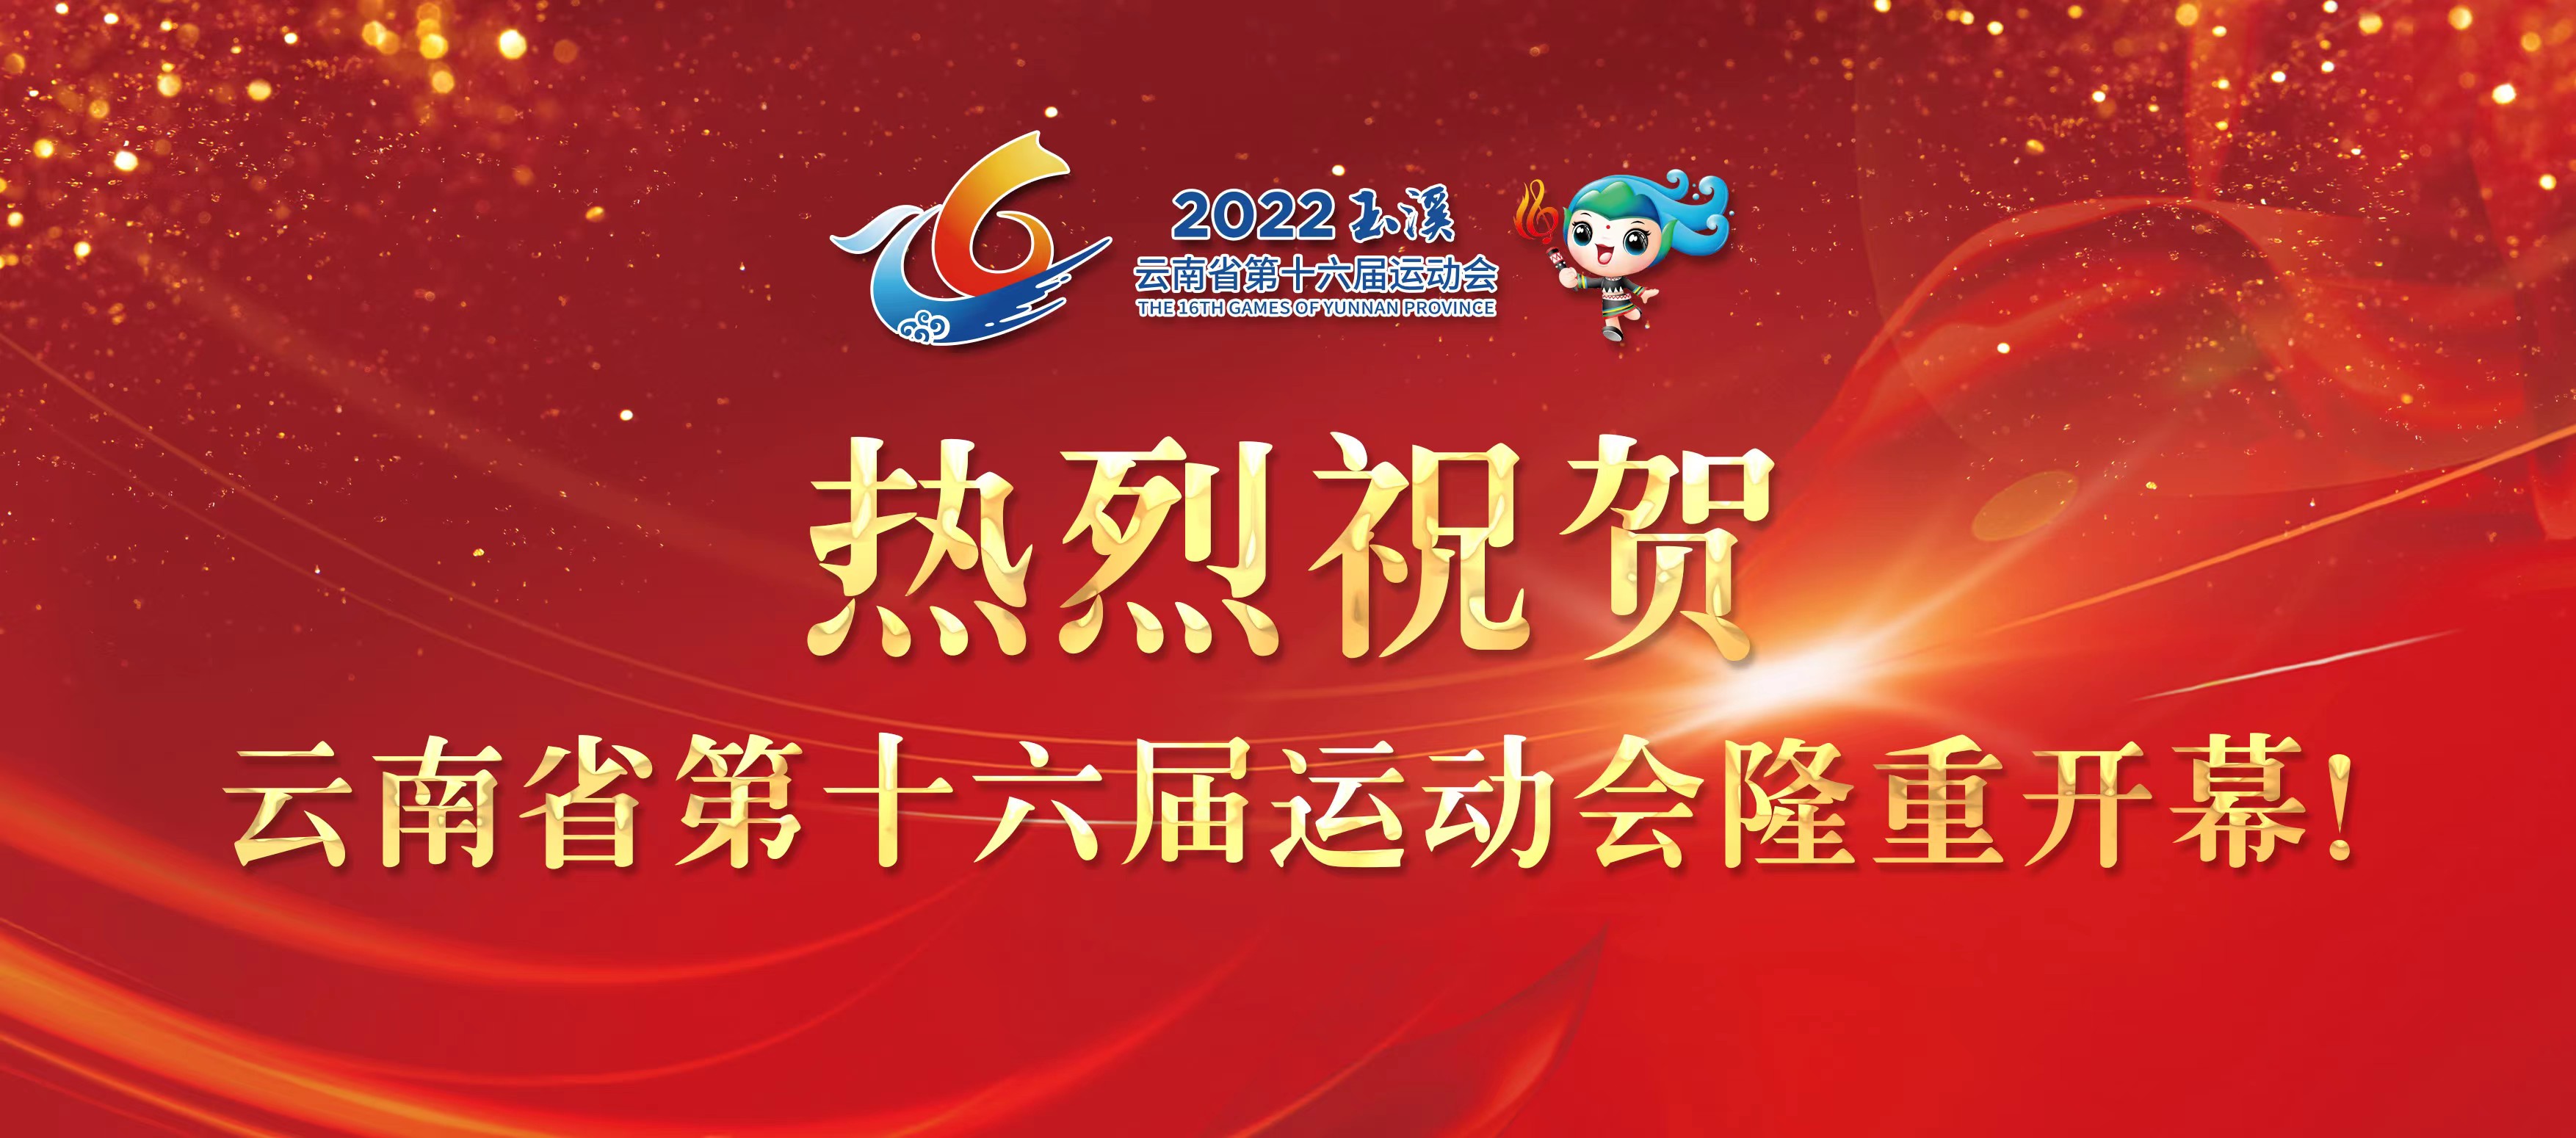 斯科威尔祝贺云南省第十六届运动会隆重开幕！